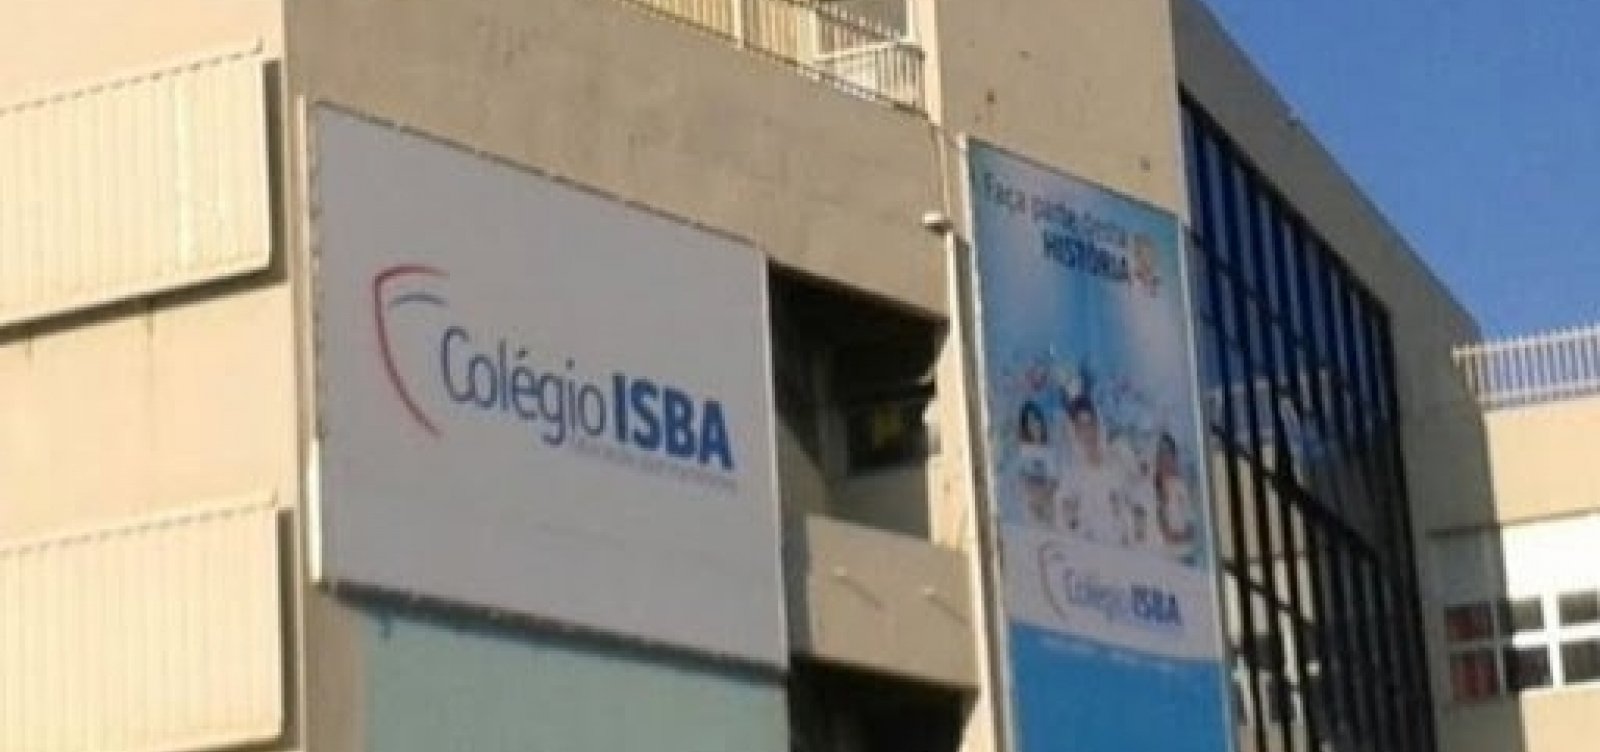 Colégio Isba anuncia fim das atividades após 56 anos